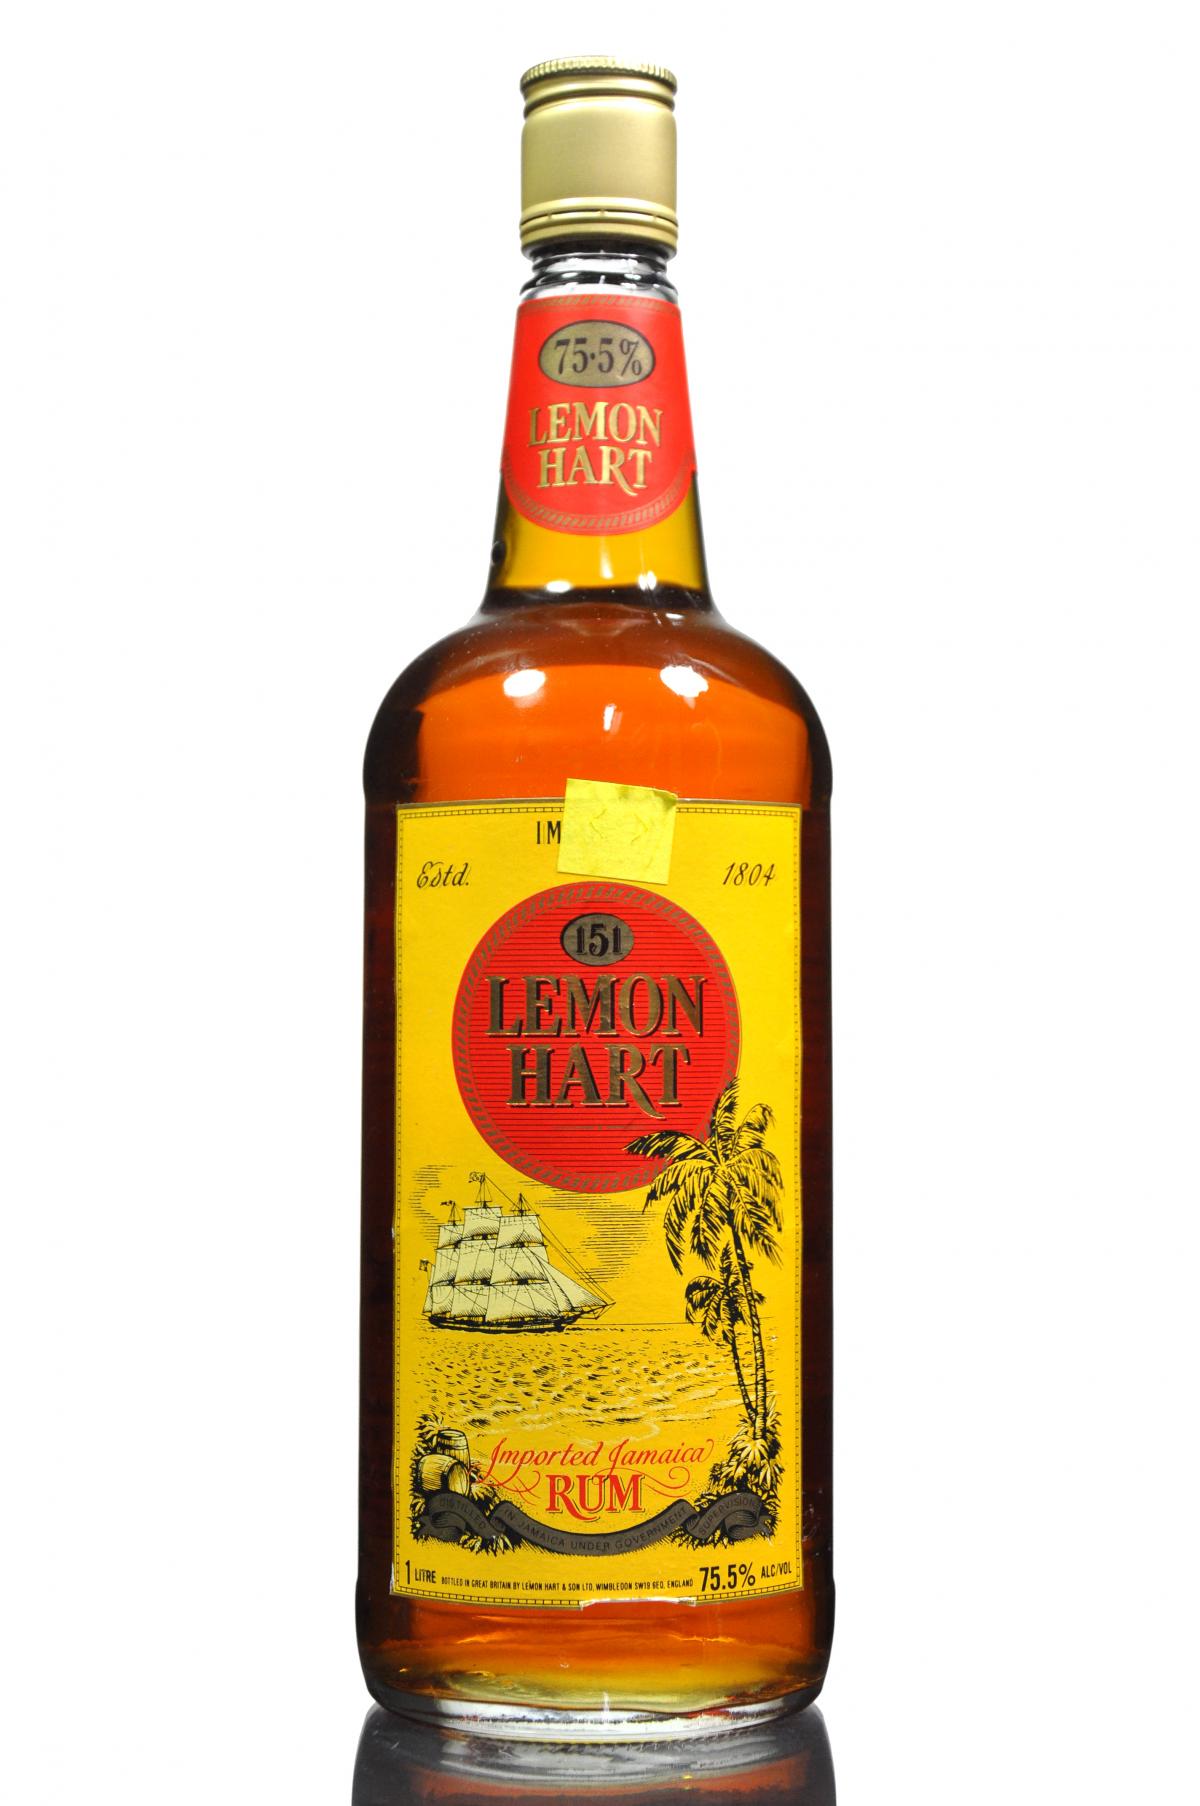 Lemon Hart Rum - 1 Litre - 75.5%